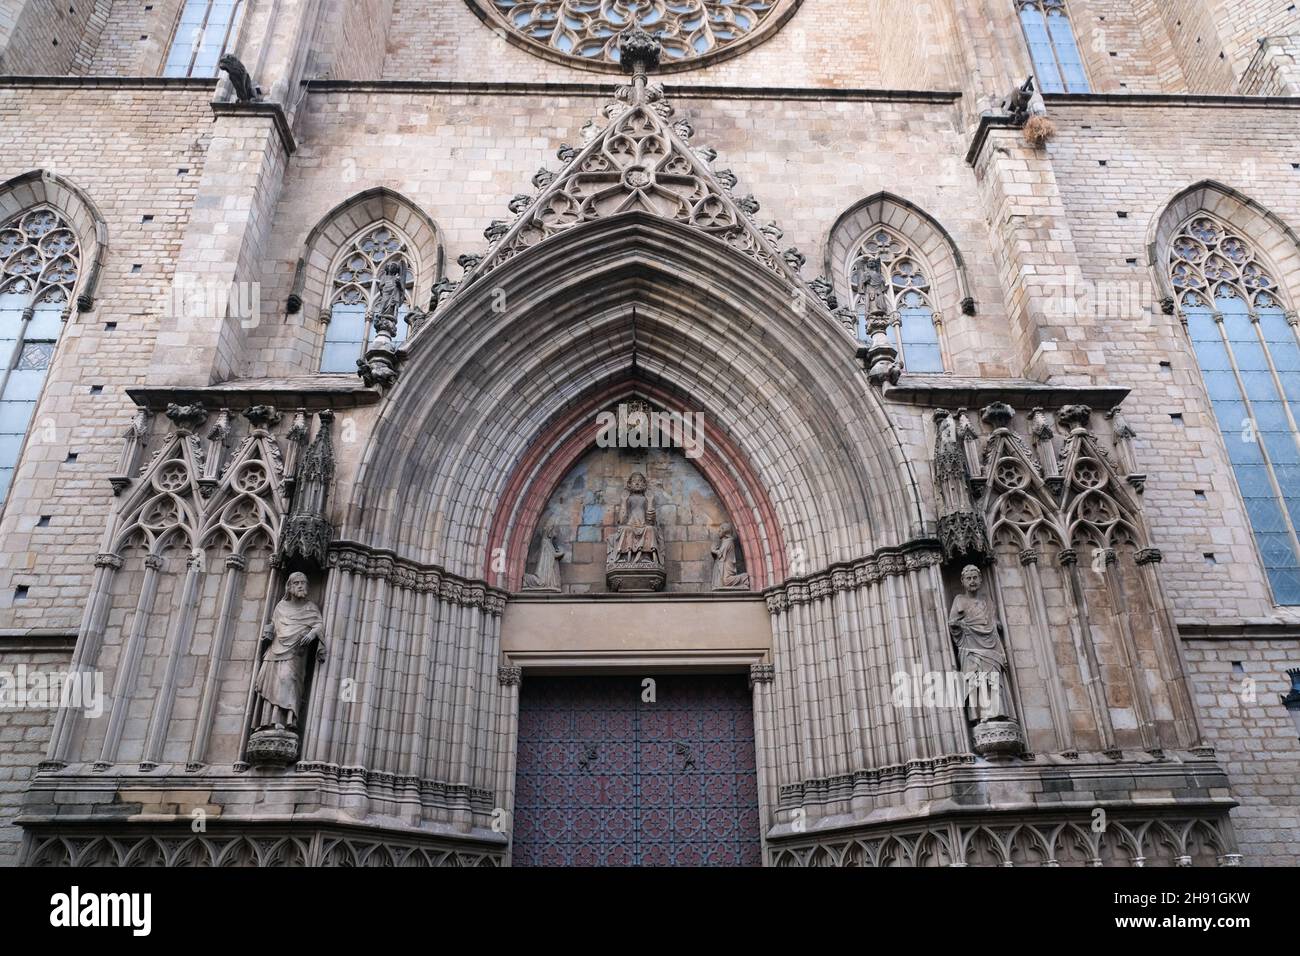 Catedral de Barcelona o Cattedrale di Barcellona. La Cattedrale della Santa Croce e Sant'Eulalia. Architettura gotica. Foto Stock